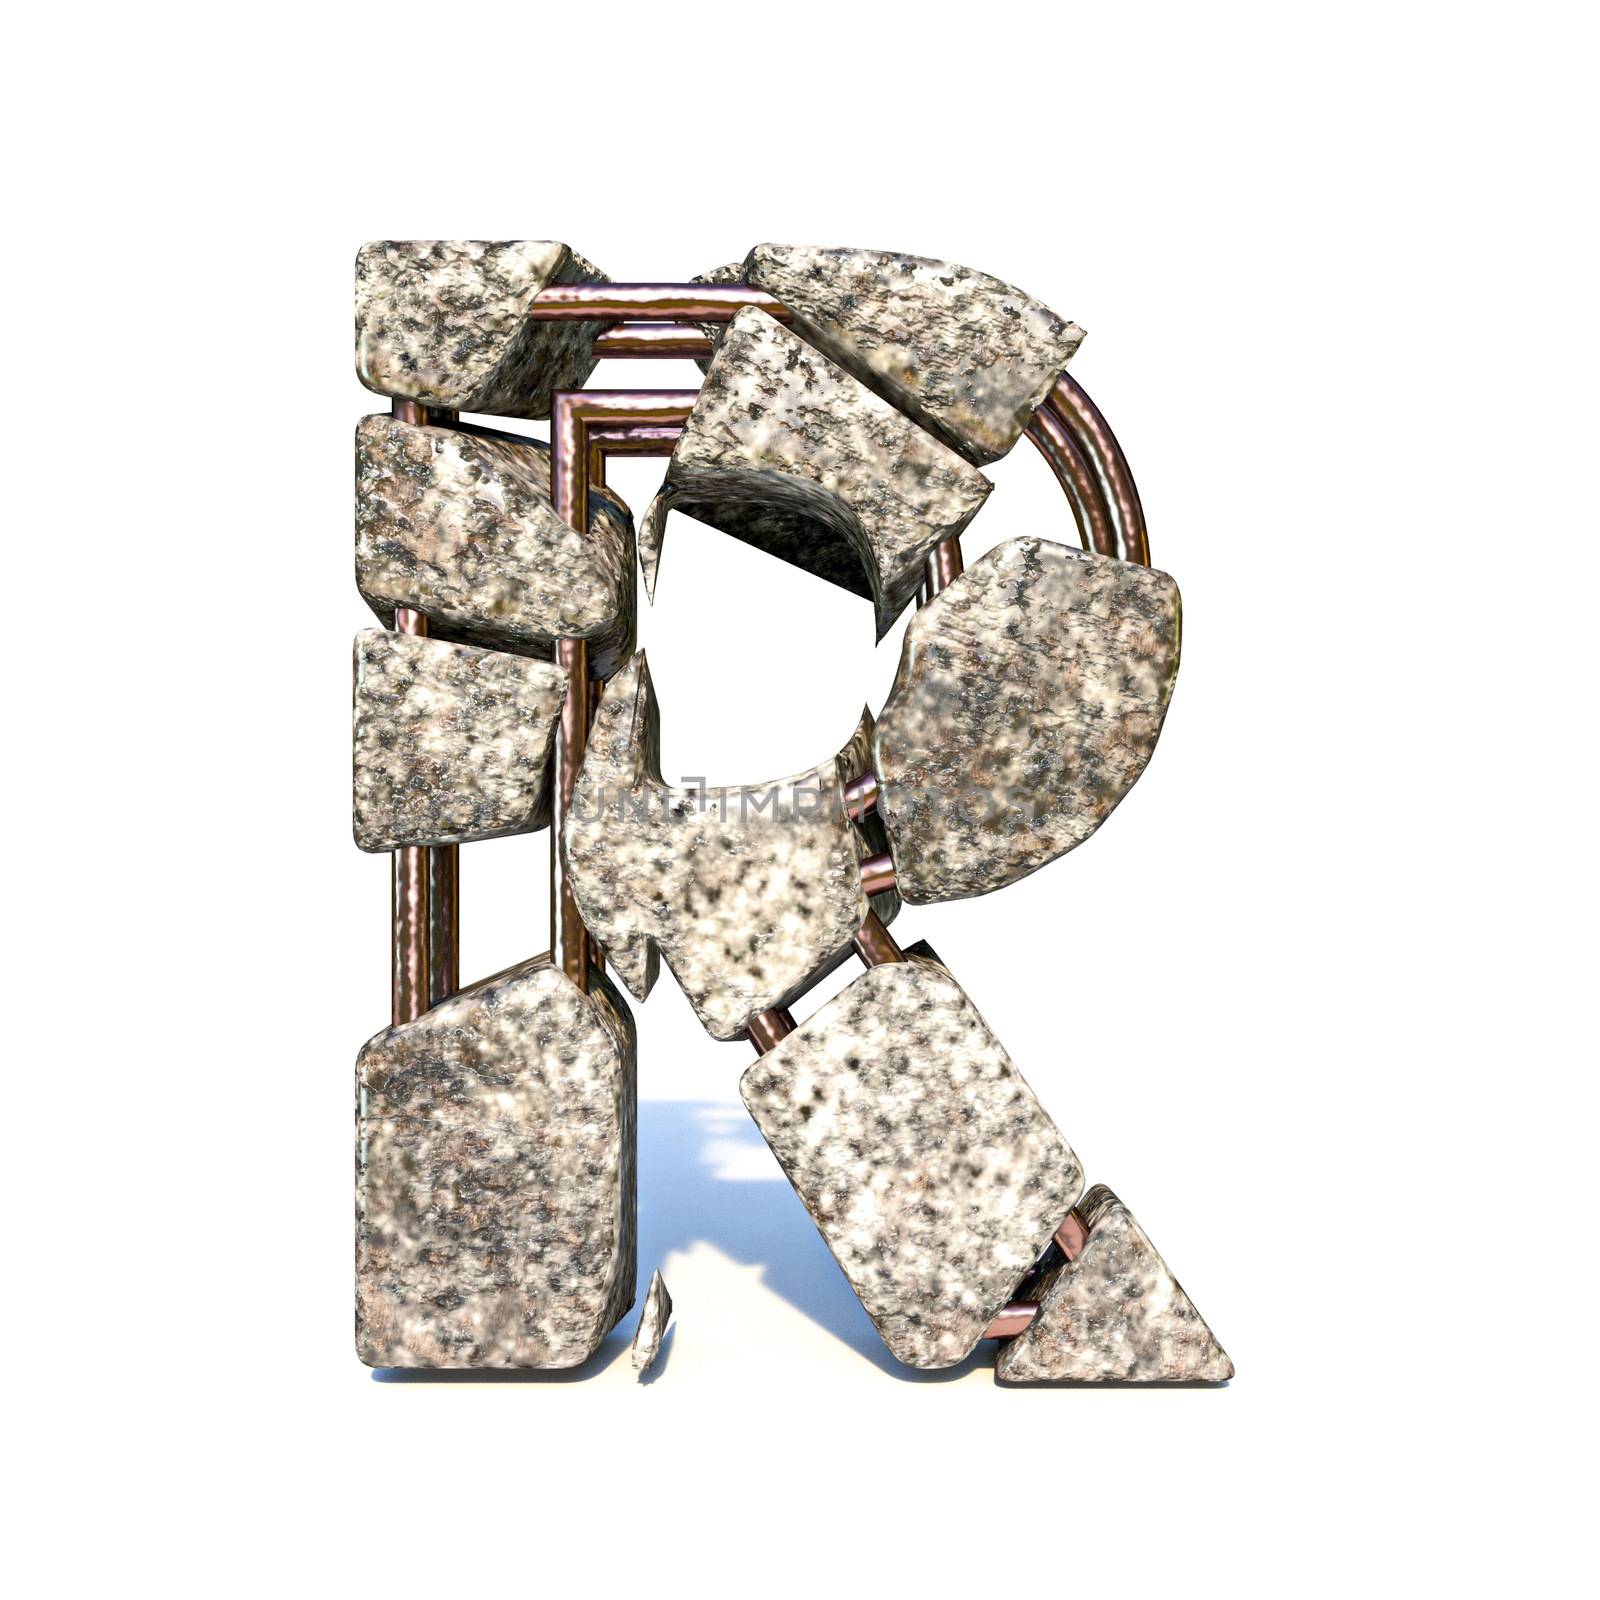 Concrete fracture font Letter R 3D by djmilic